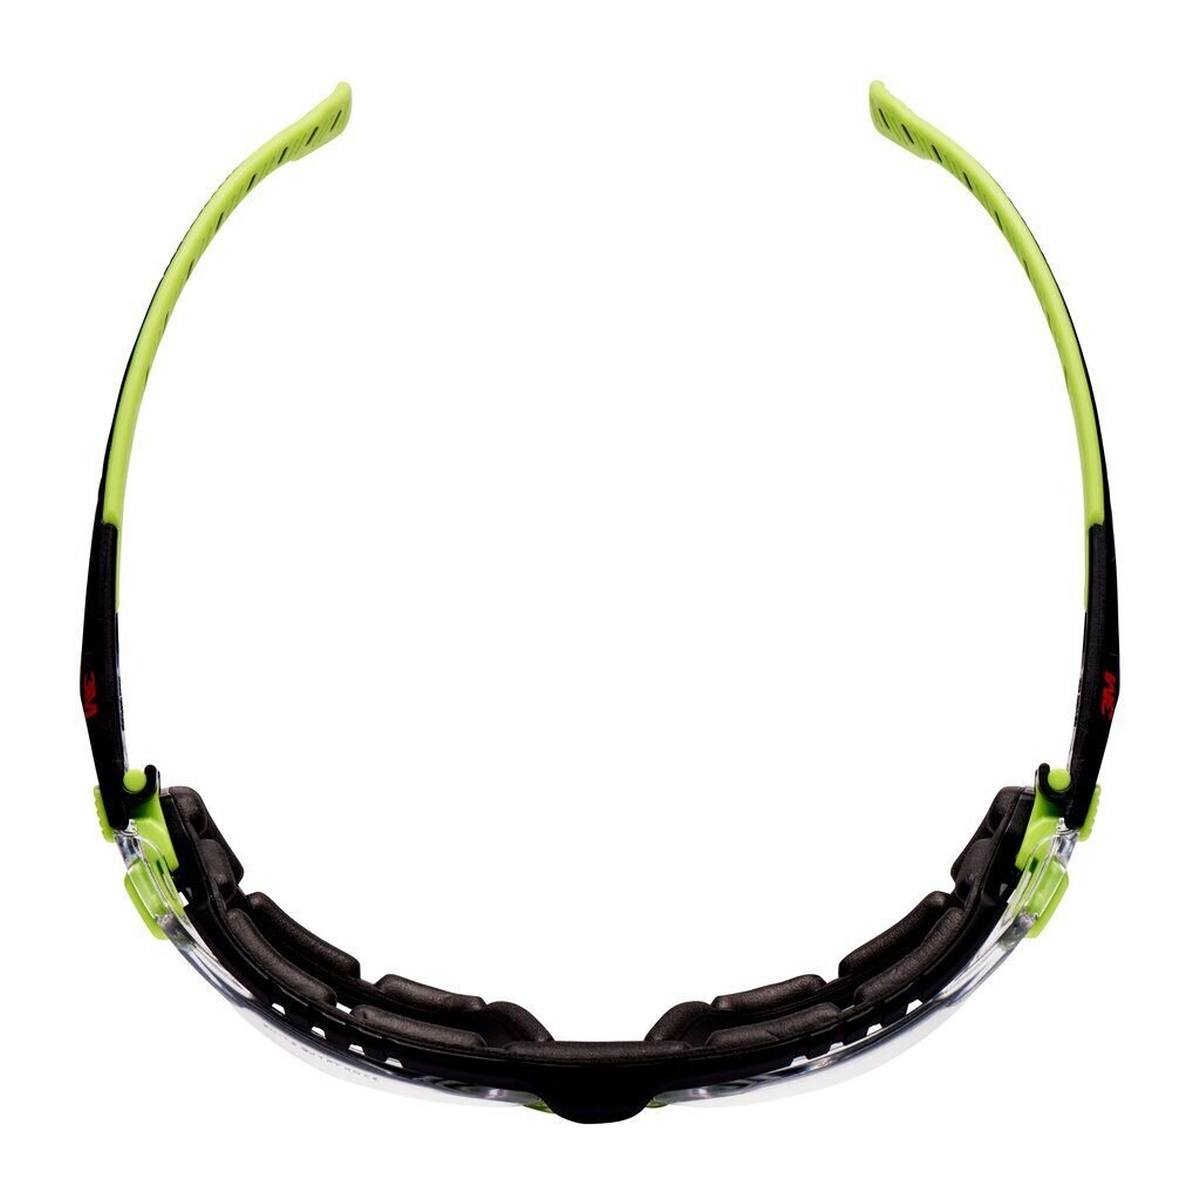 3M Gafas de protección Solus 1000, patillas verde/negro, revestimiento Scotchgard antivaho/antirayas (K&amp;N), lente transparente, montura y cinta de espuma, S1201SGAFKT-EU